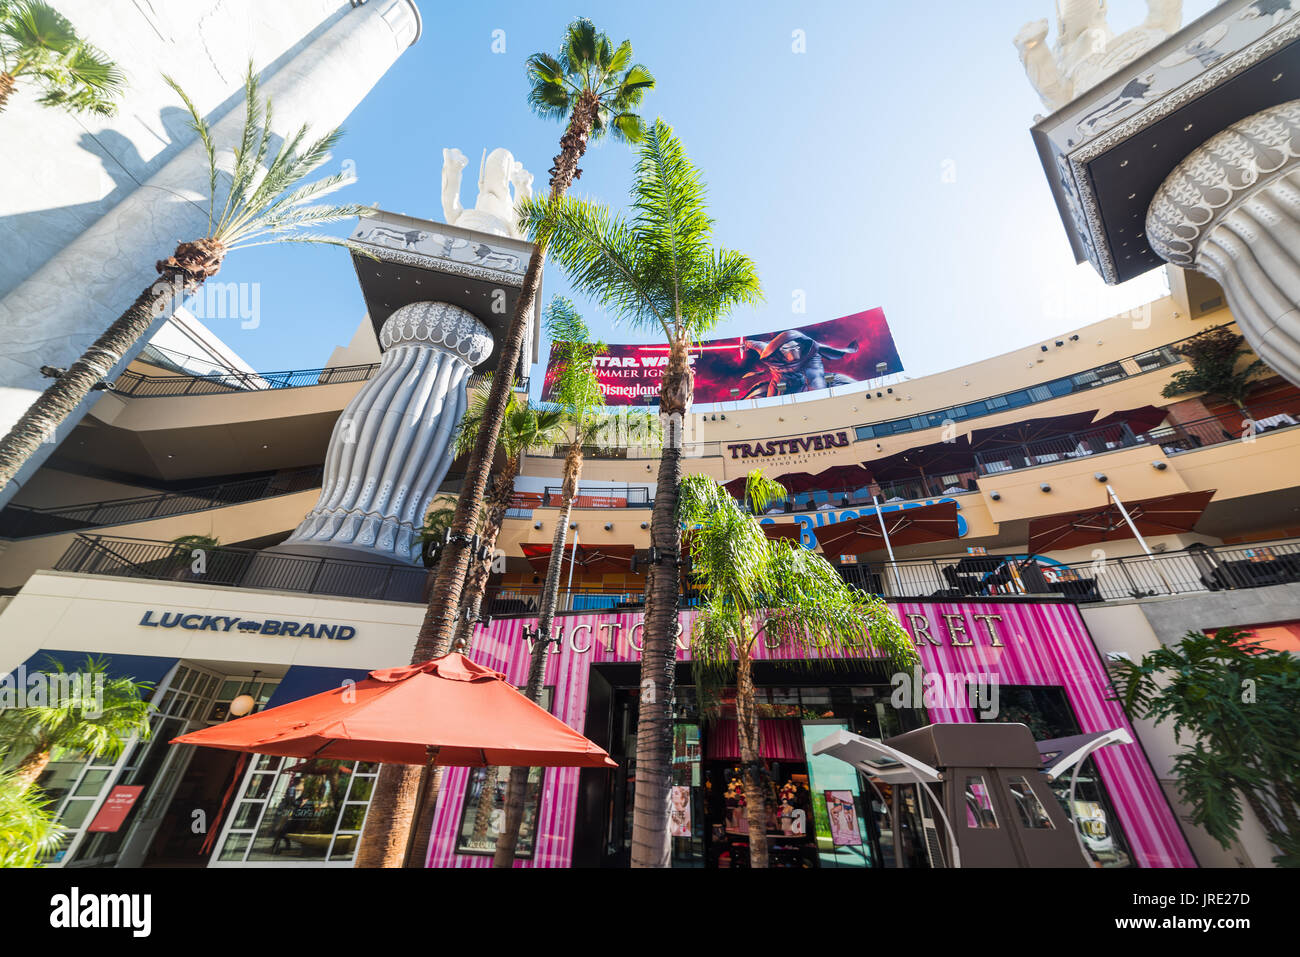 LOS ANGELES, CALIFORNIA - NOVEMBER 2, 2016: Hollywood & Highland mall in Los Angeles, California Stock Photo